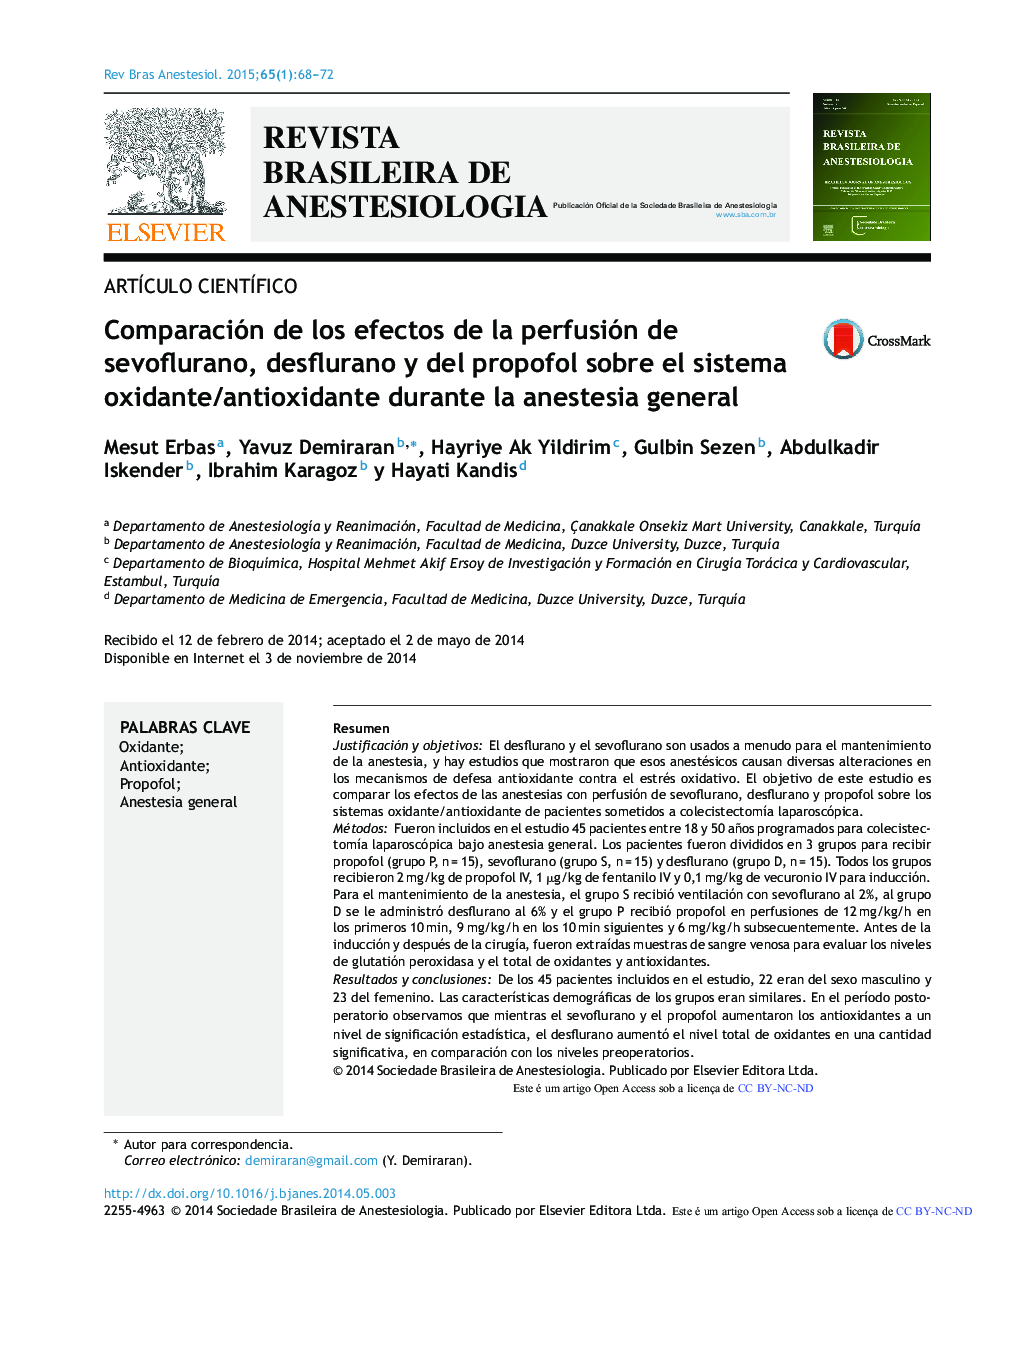 Comparación de los efectos de la perfusión de sevoflurano, desflurano y del propofol sobre el sistema oxidante/antioxidante durante la anestesia general